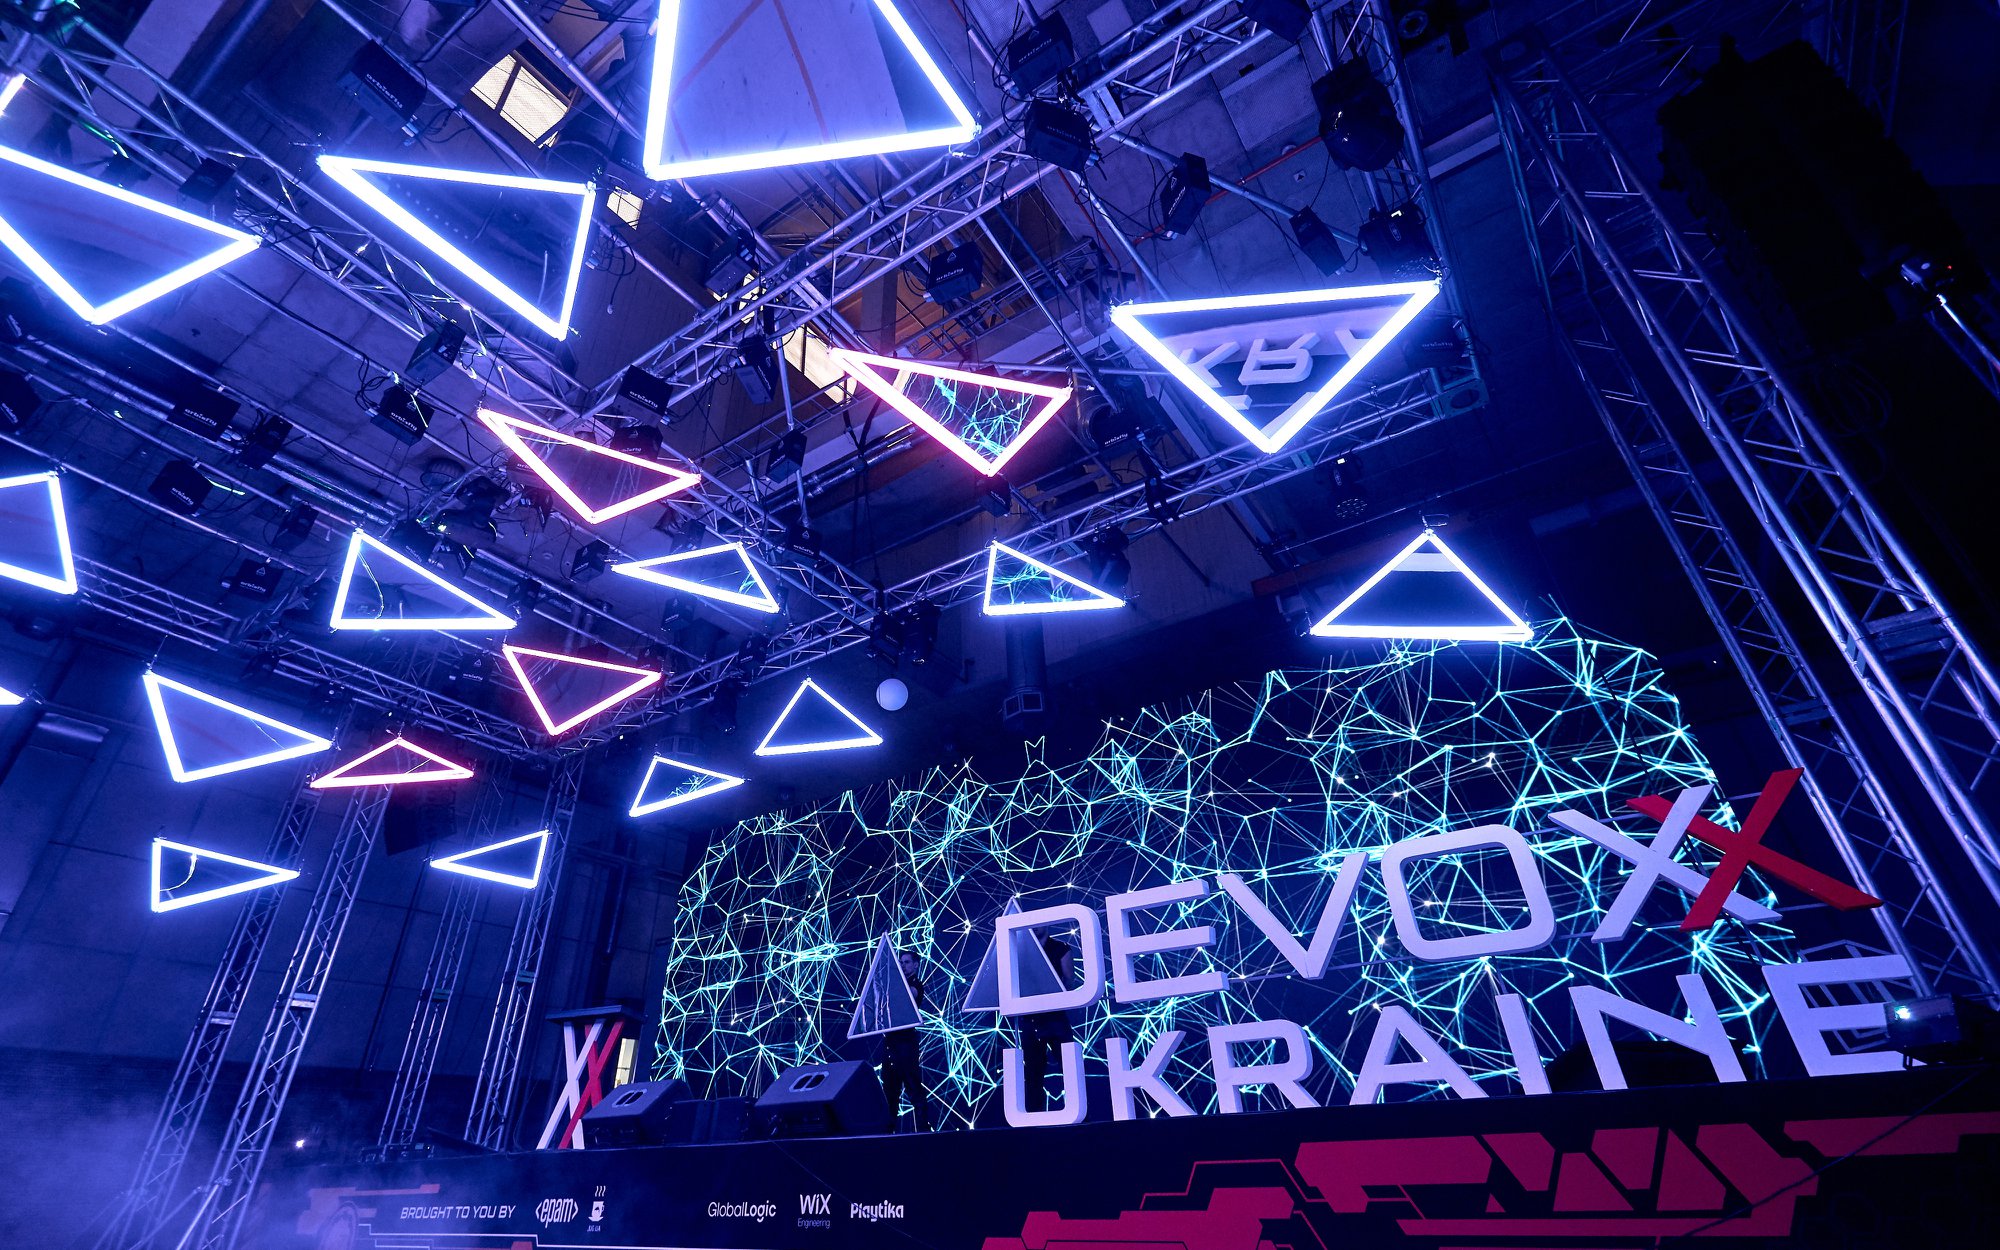 Devoxx − конференція для розробників